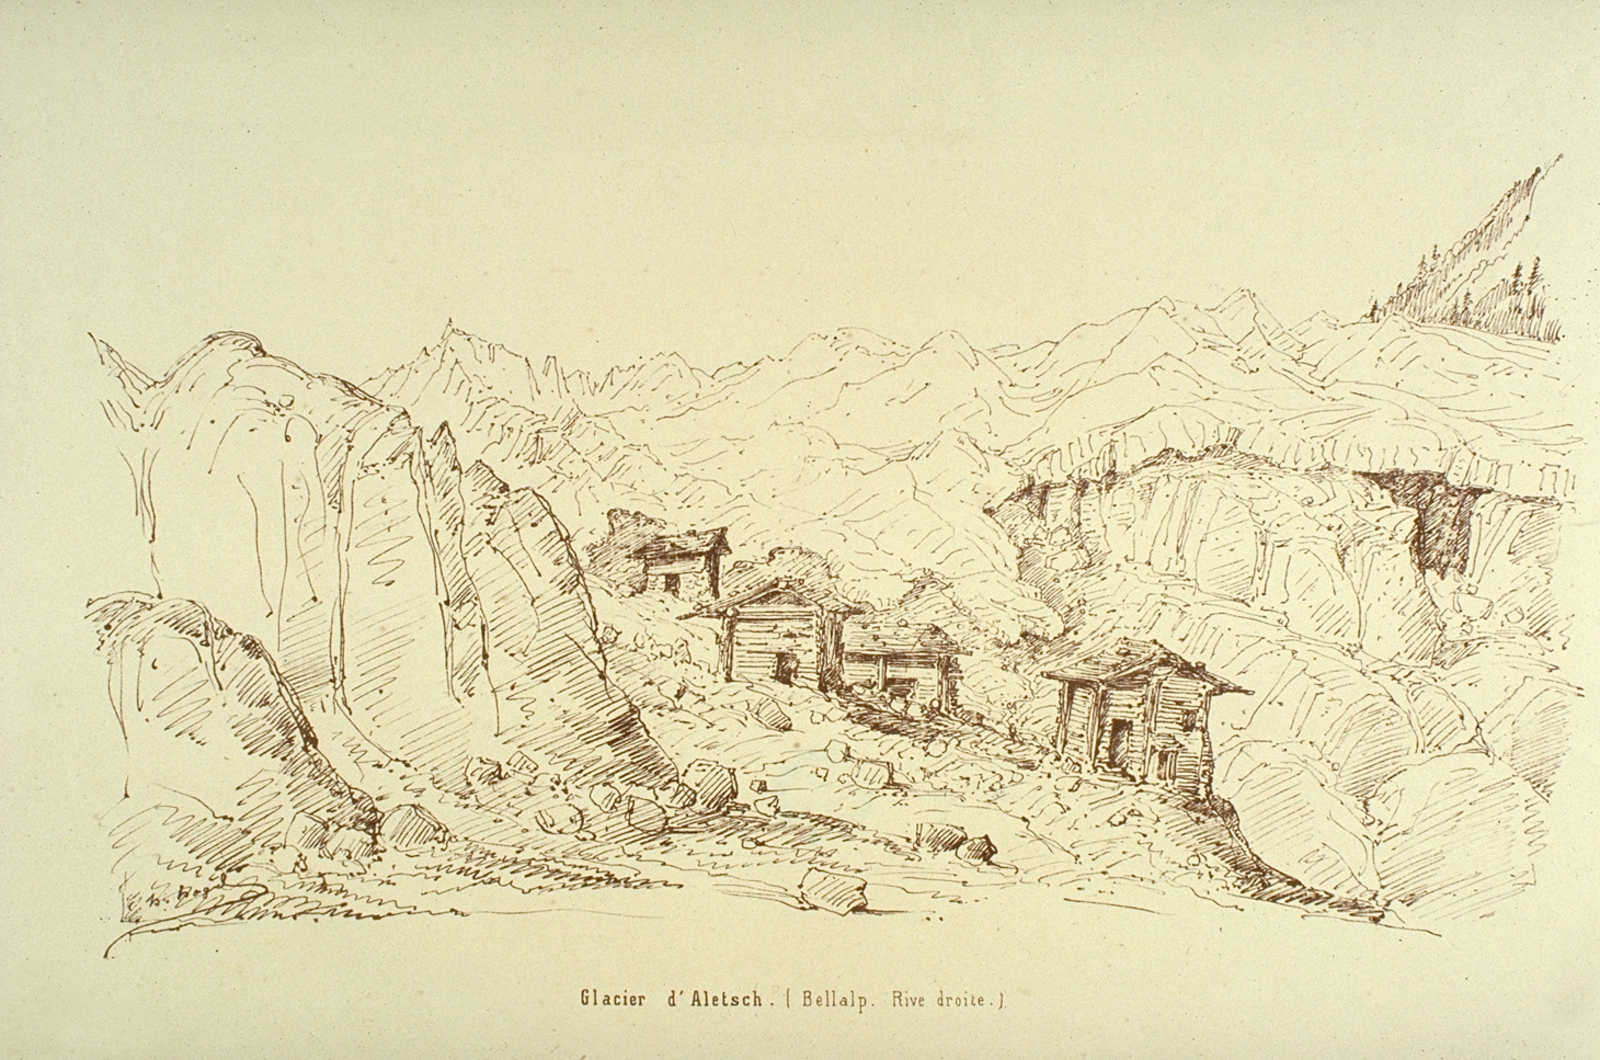 Hütten zum Blattjer 1849